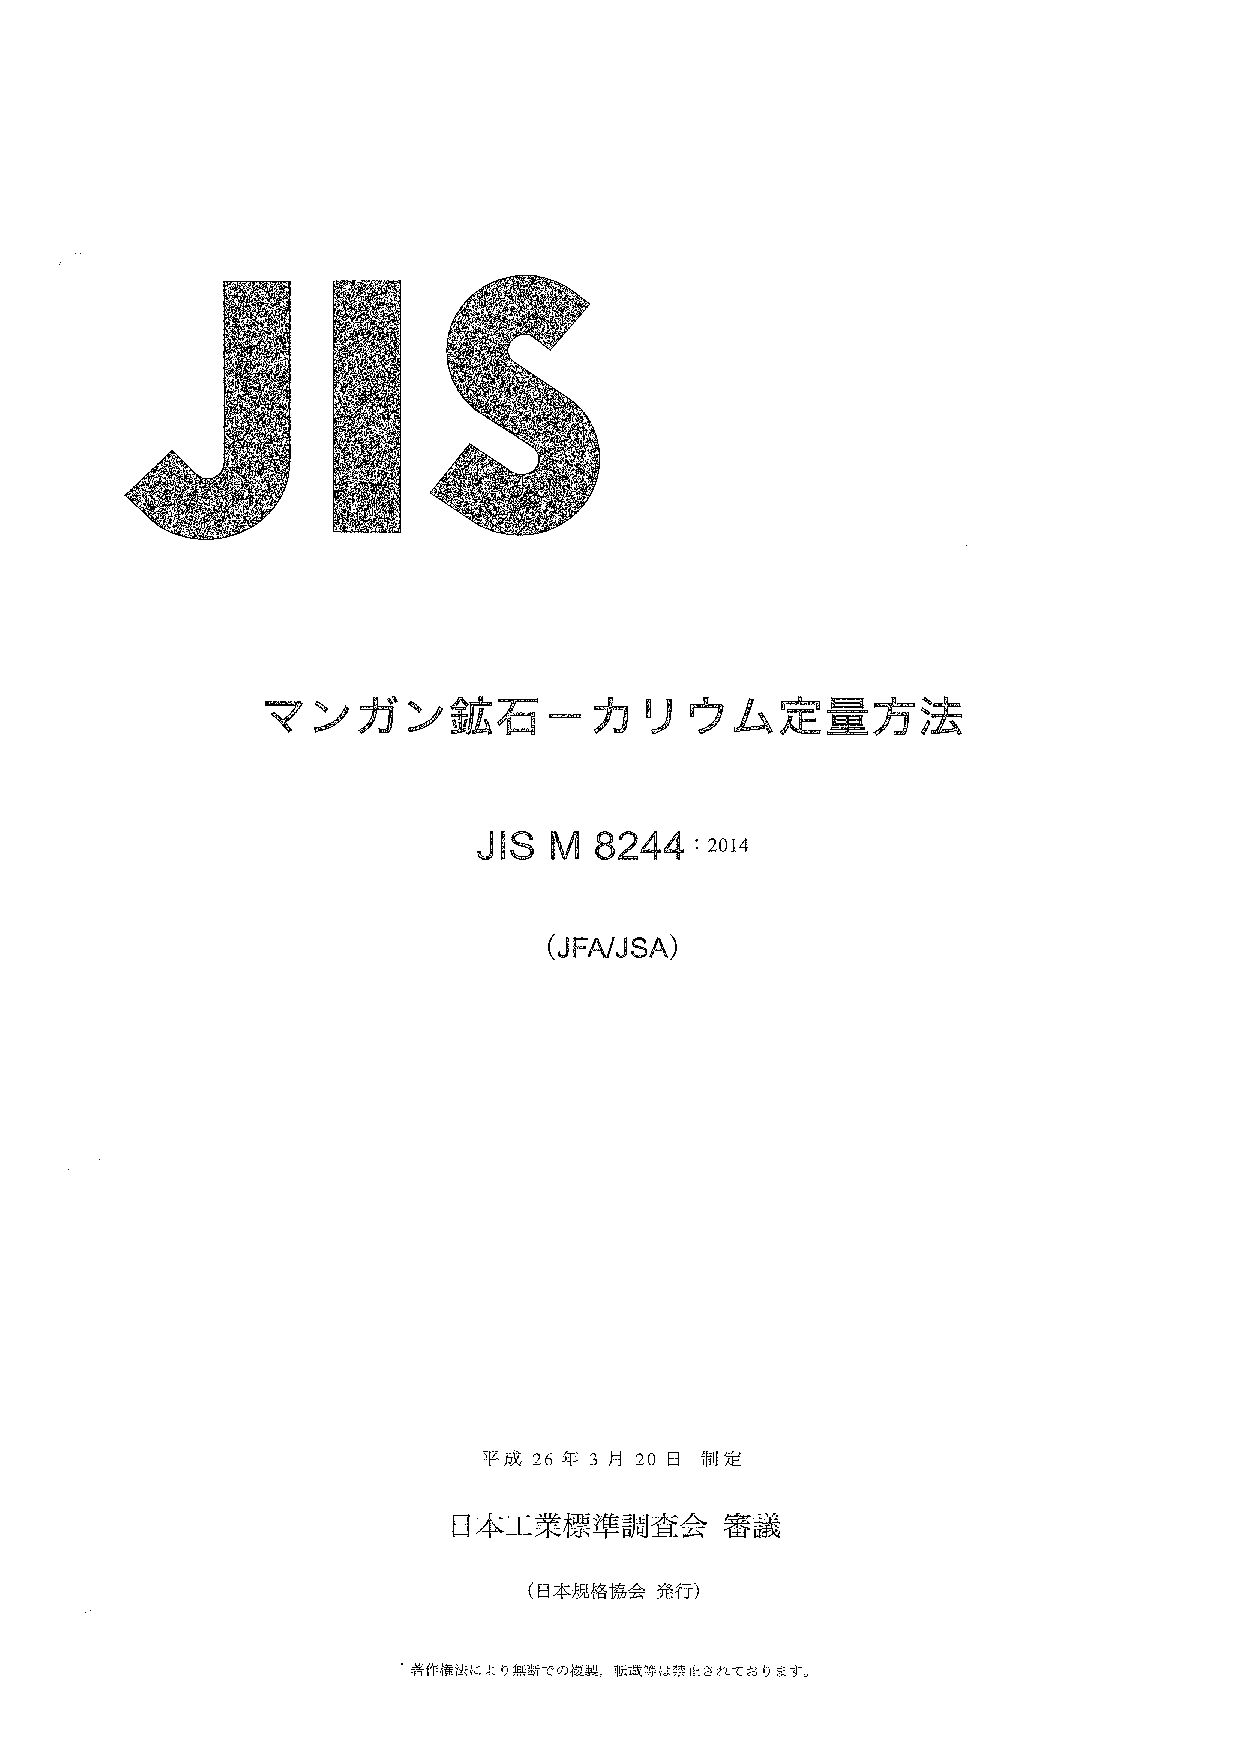 JIS M 8244:2014